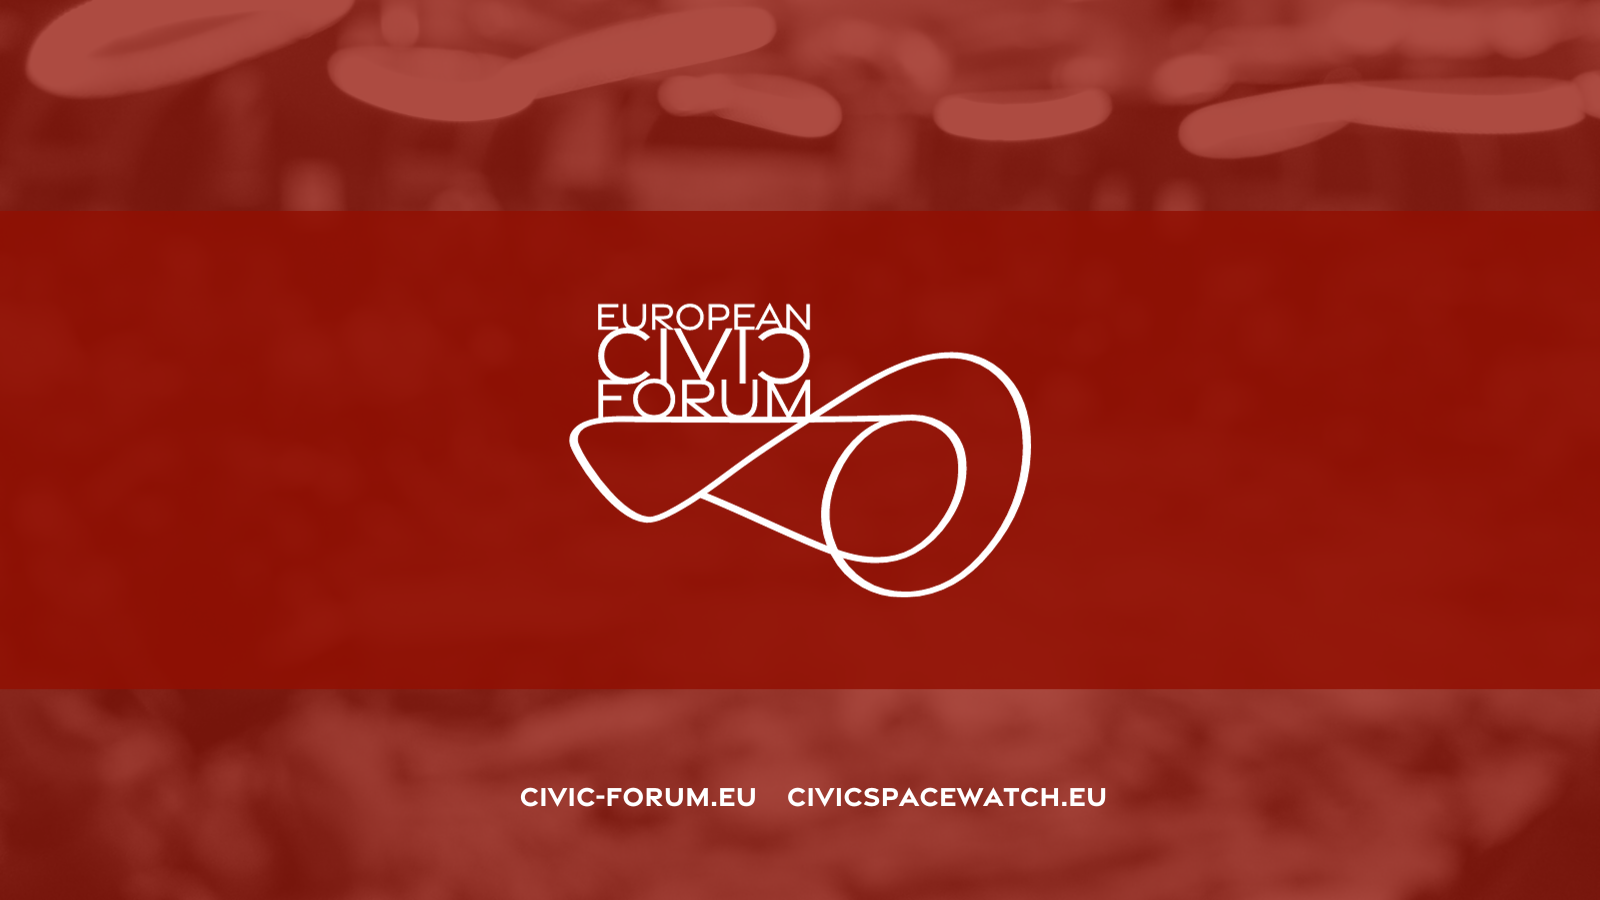 (c) Civic-forum.eu